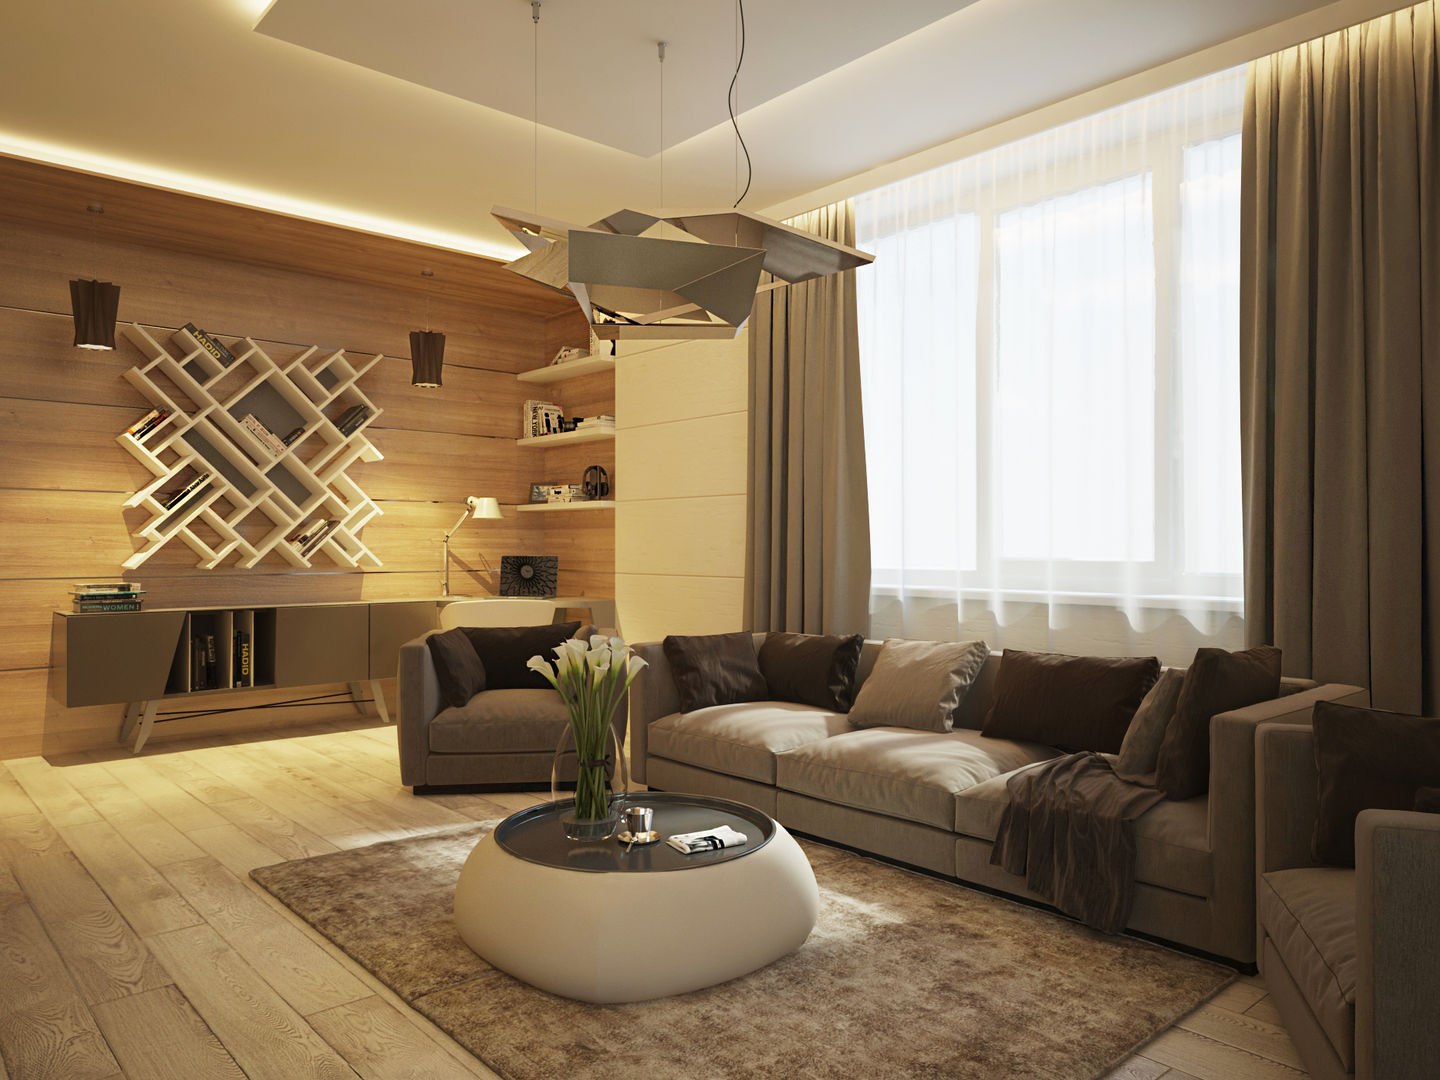 Квартира в современном минимализме, Polovets design studio Polovets design studio Living room